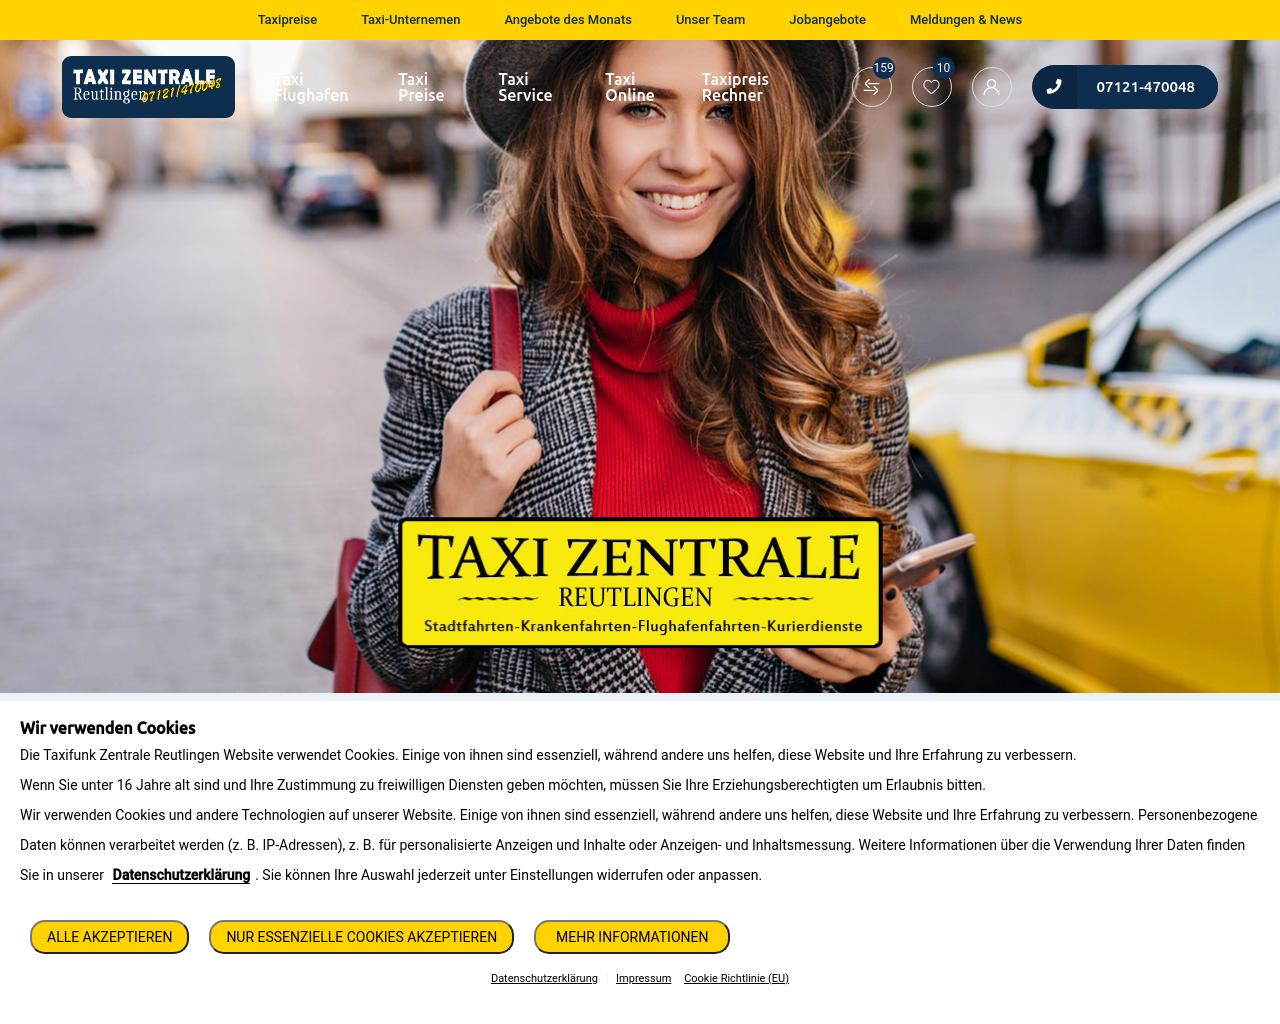 taxifunk-zentrale-reutlingen.de